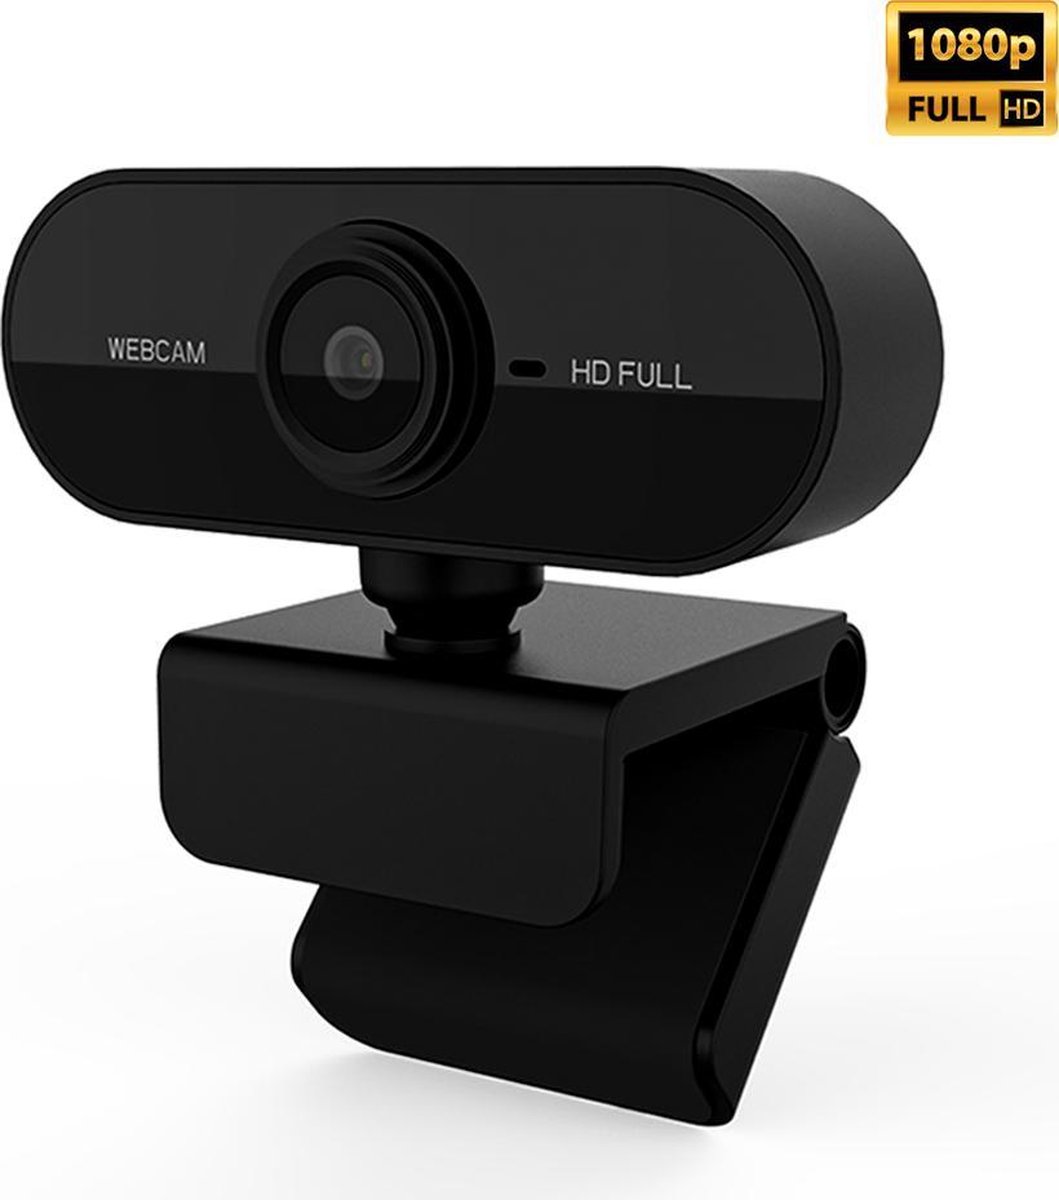 Mac Ordinateur Portable USB Caméra Web pour Appels Vidéo Webcam Webcam Full HD 720P avec Microphone Étude Conférence sur Windows 